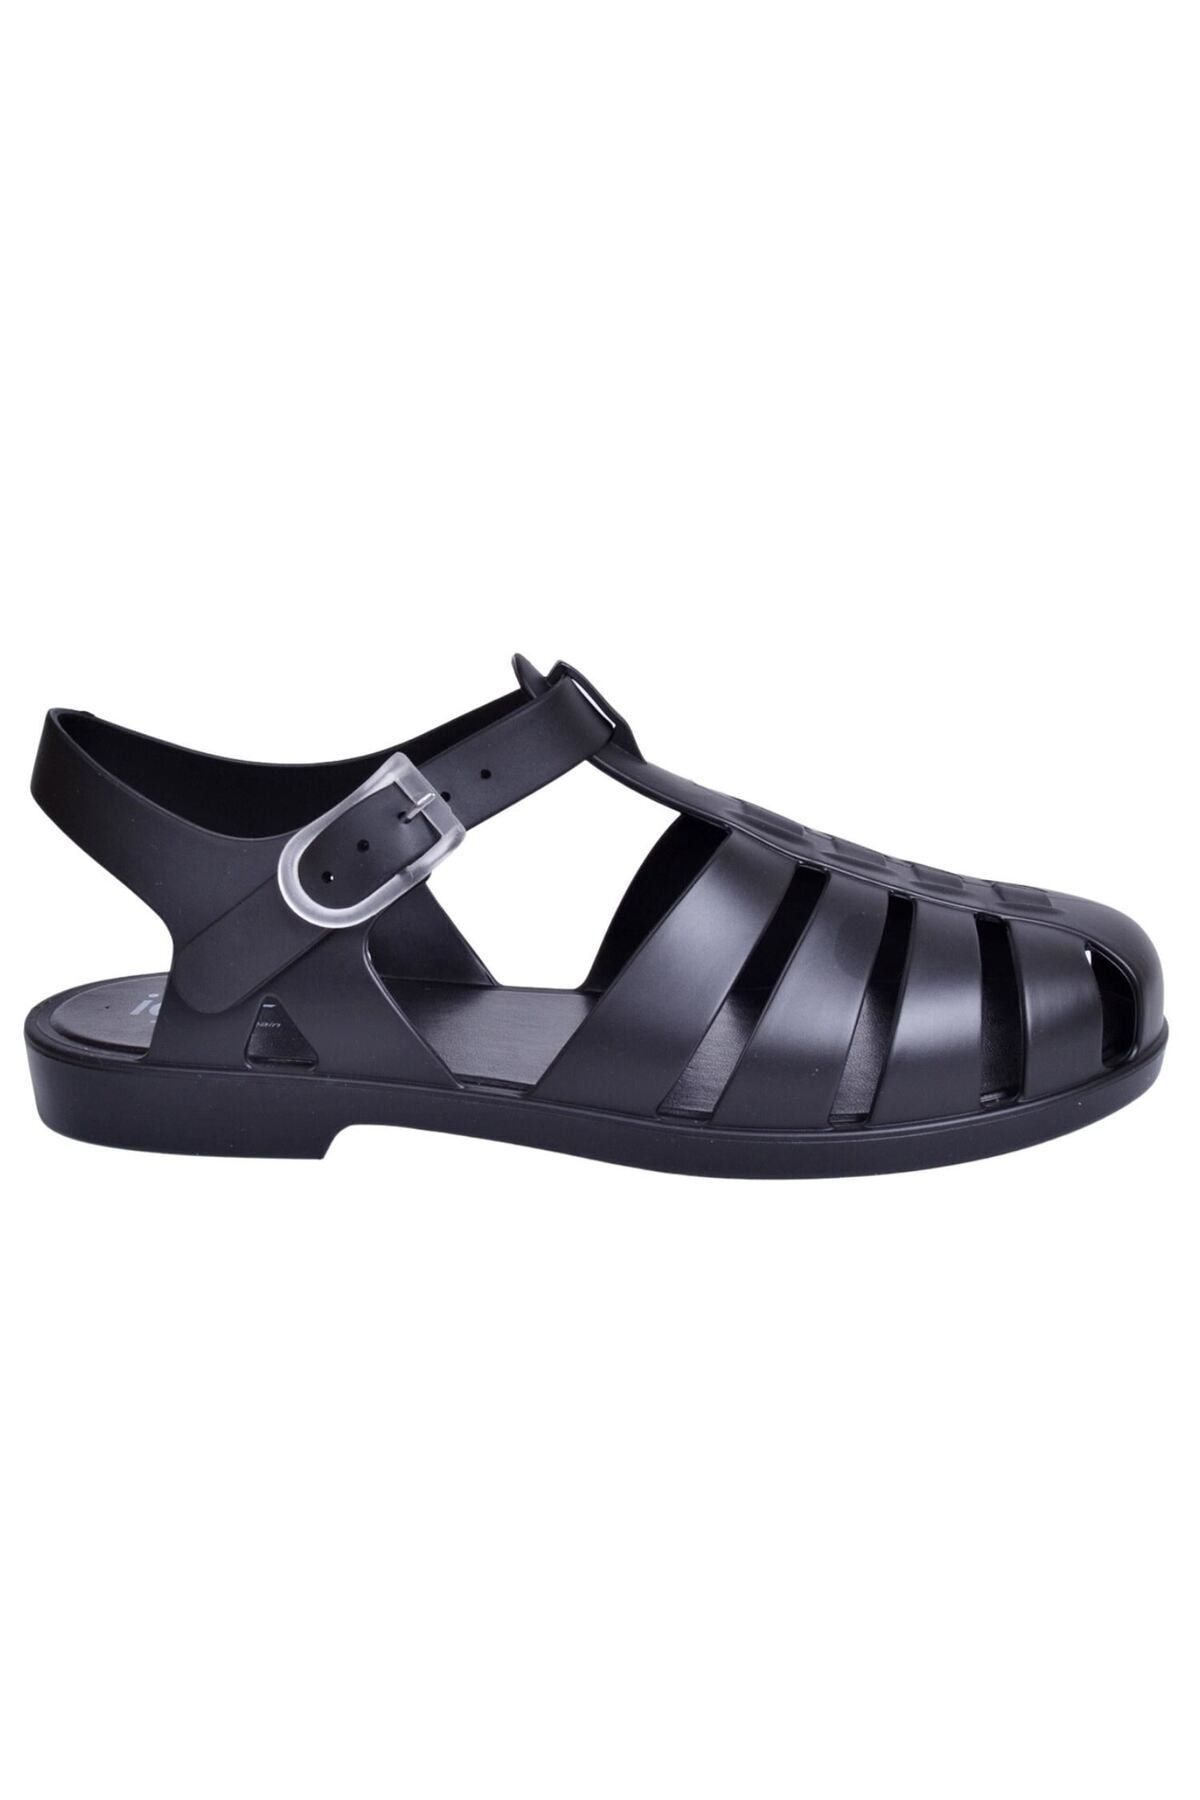 IGOR S10259 Biarritz Mate Siyah Kadın Sandalet